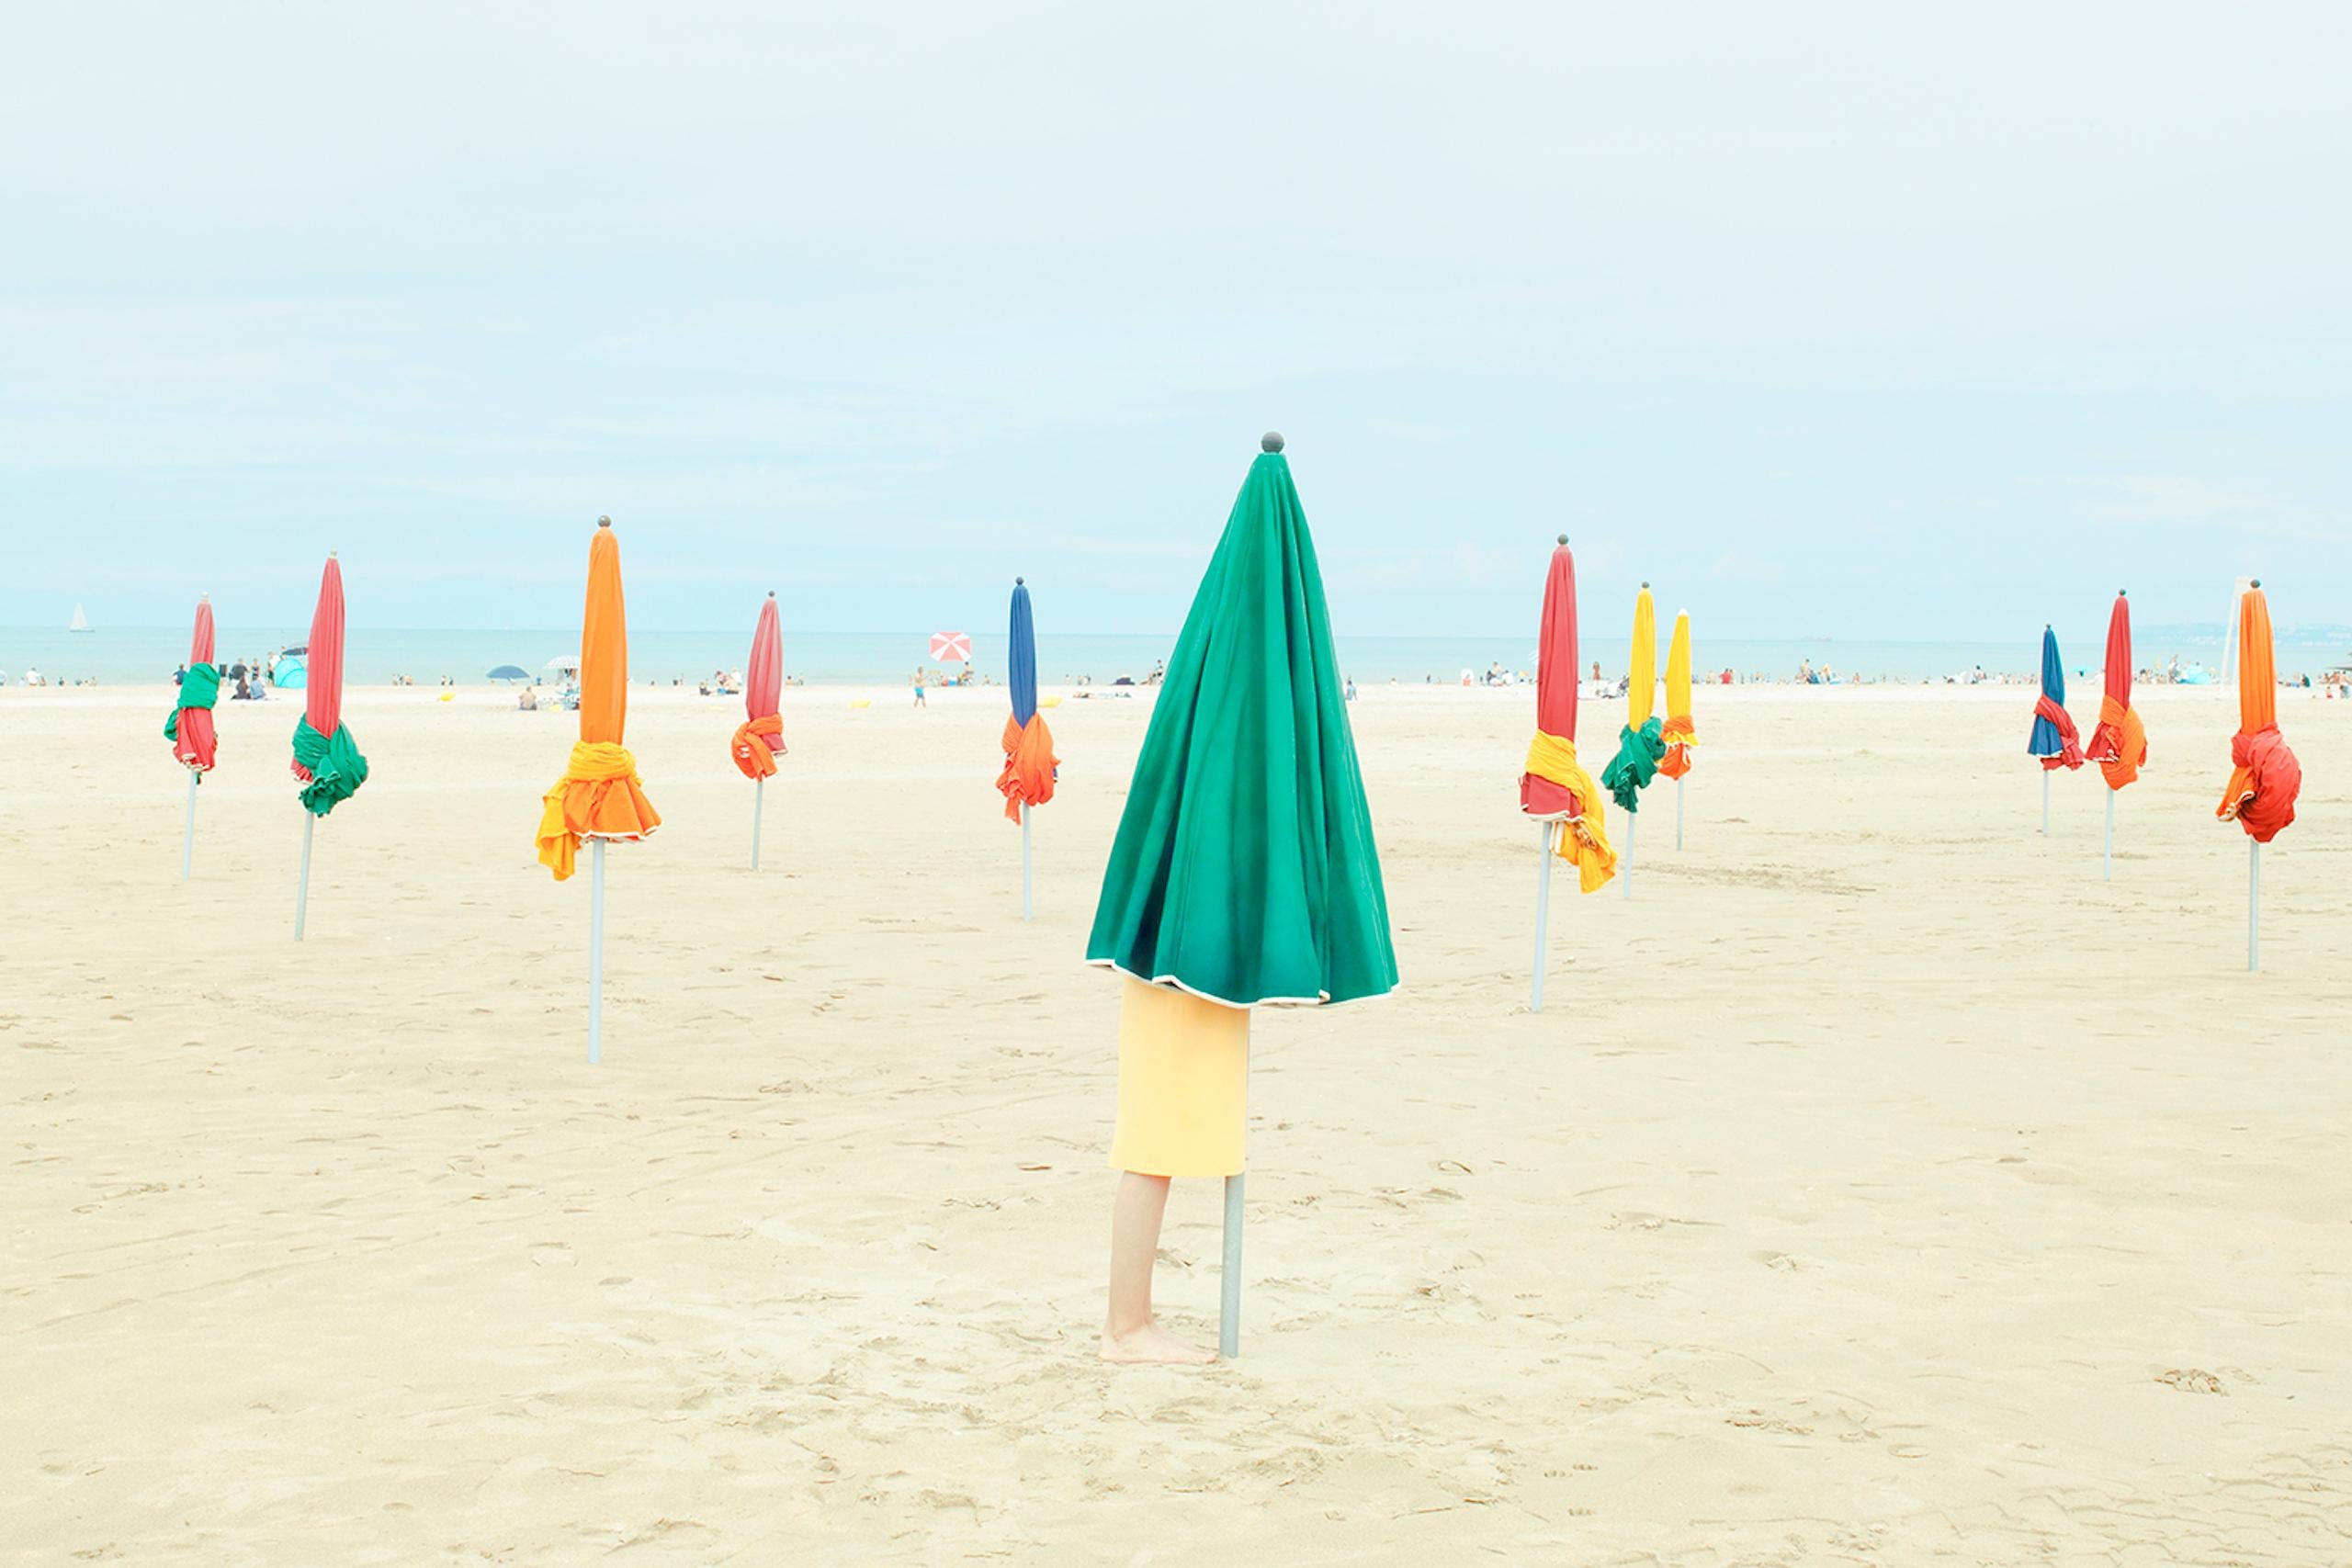 Der Strand ist eine Fotografie des französischen zeitgenössischen Künstlers Camille Brasselet. 

Dieses Foto wird nur als ungerahmter Abzug verkauft. Sie ist in 2 Größen erhältlich:
*50 cm × 75 cm (19,7" × 29,5"), Auflage: 15 Exemplare
*80 cm × 120